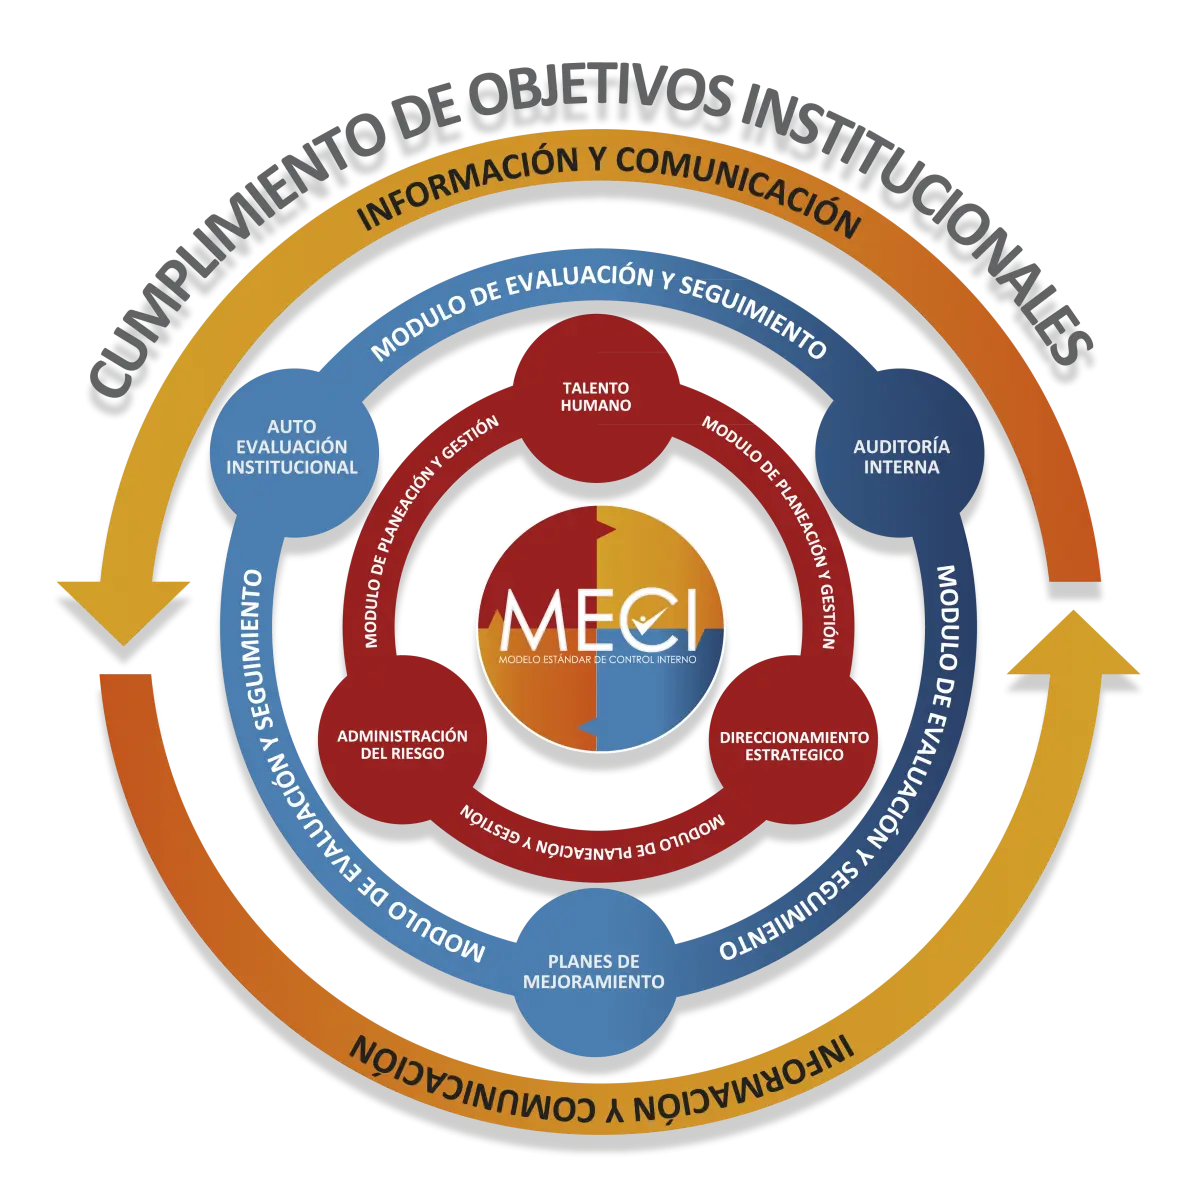 modelo meci auditoria - Cuáles son los 5 componentes del MECI